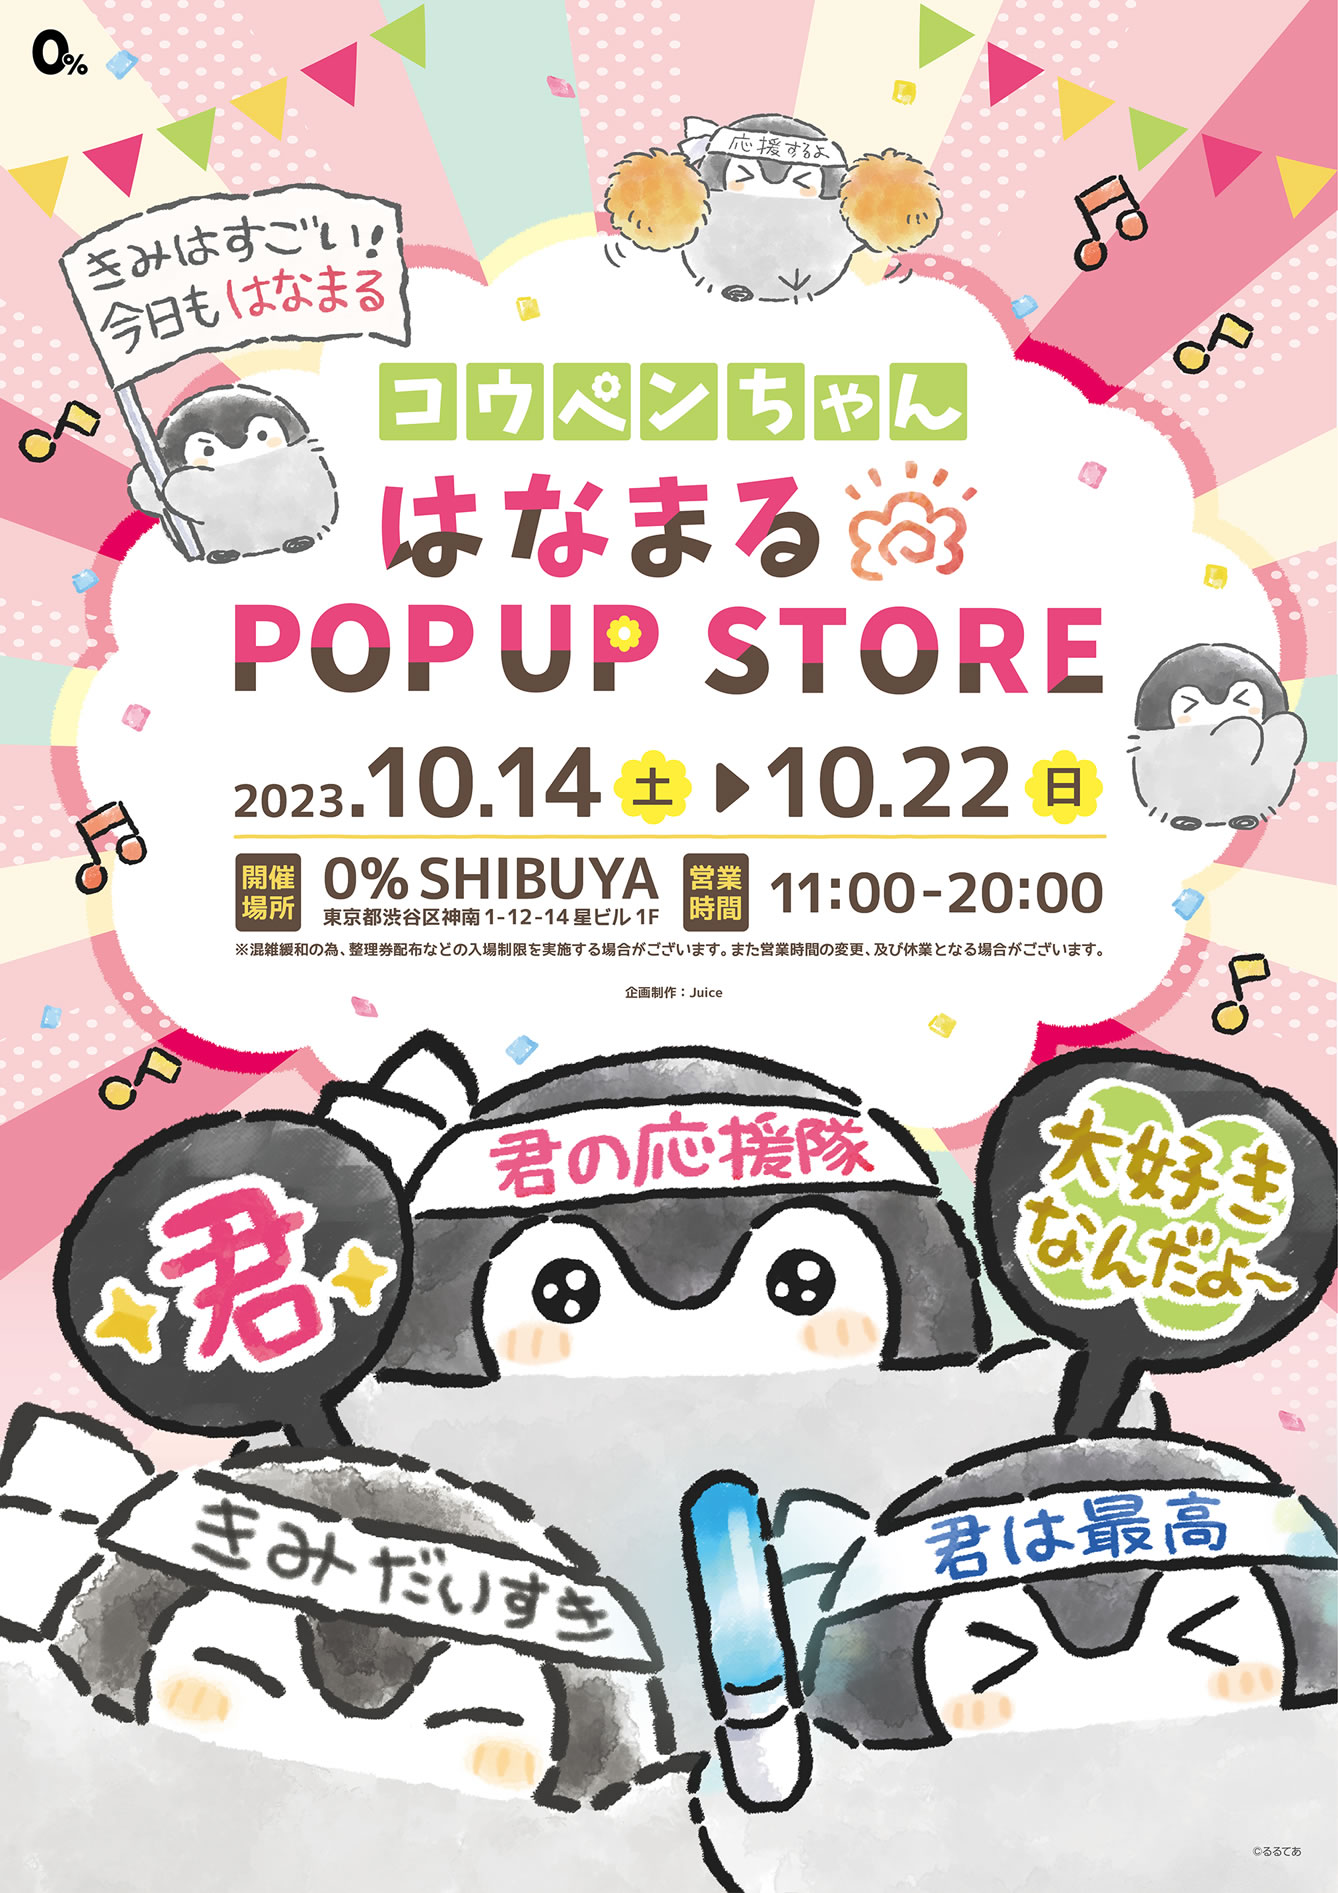 コウペンちゃん はなまるストア in 0%SHIBUYA 10月14日より開催!